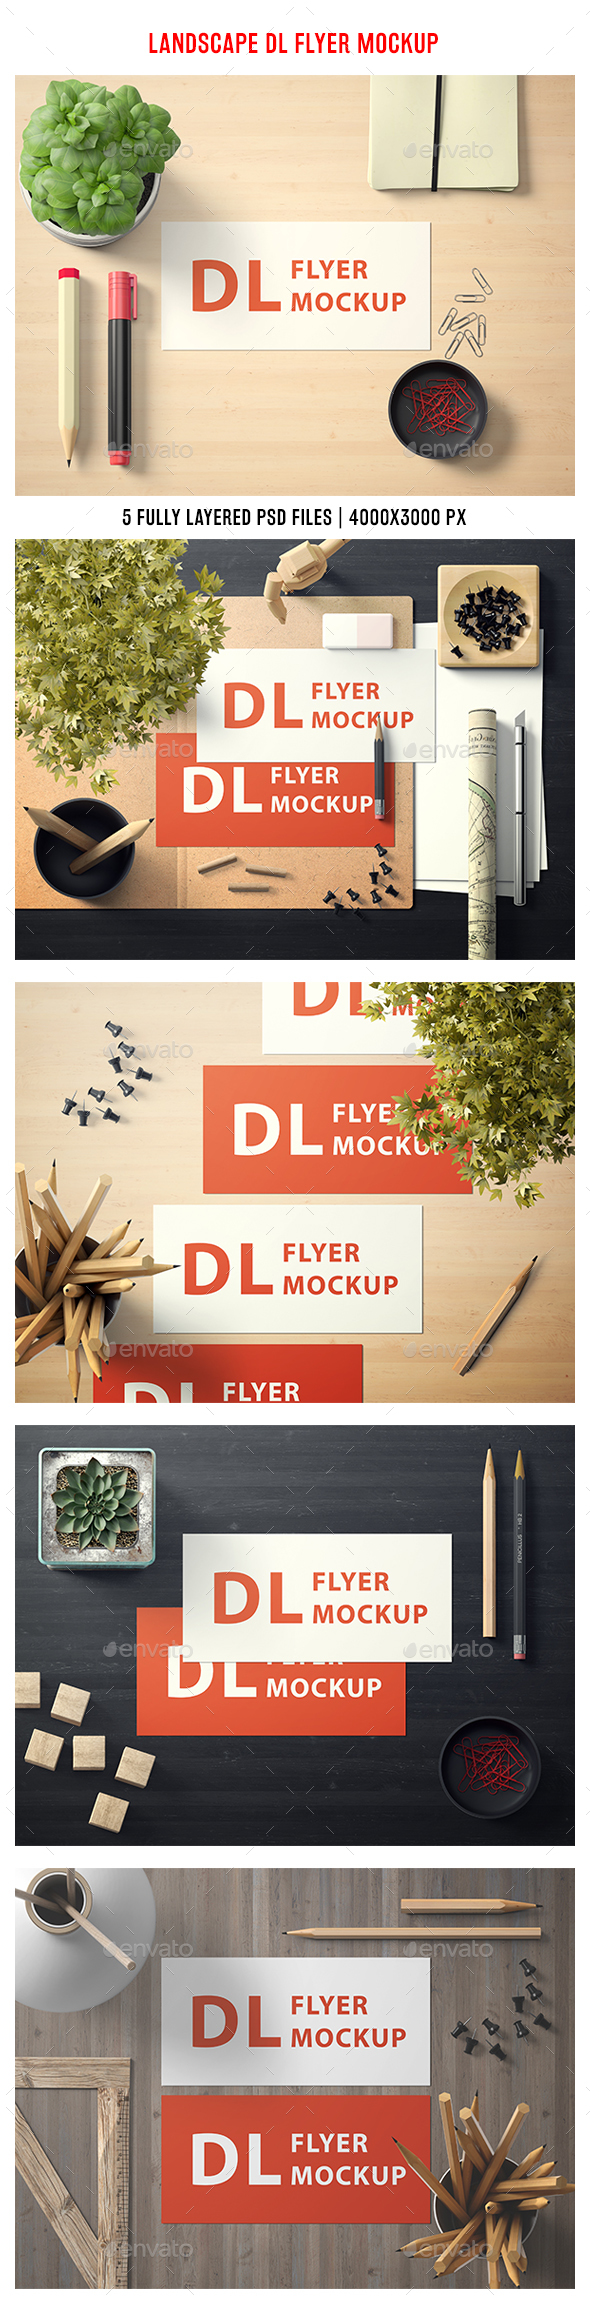 Download Stock Graphic - GraphicRiver Landscape DL Flyer Mockup ...